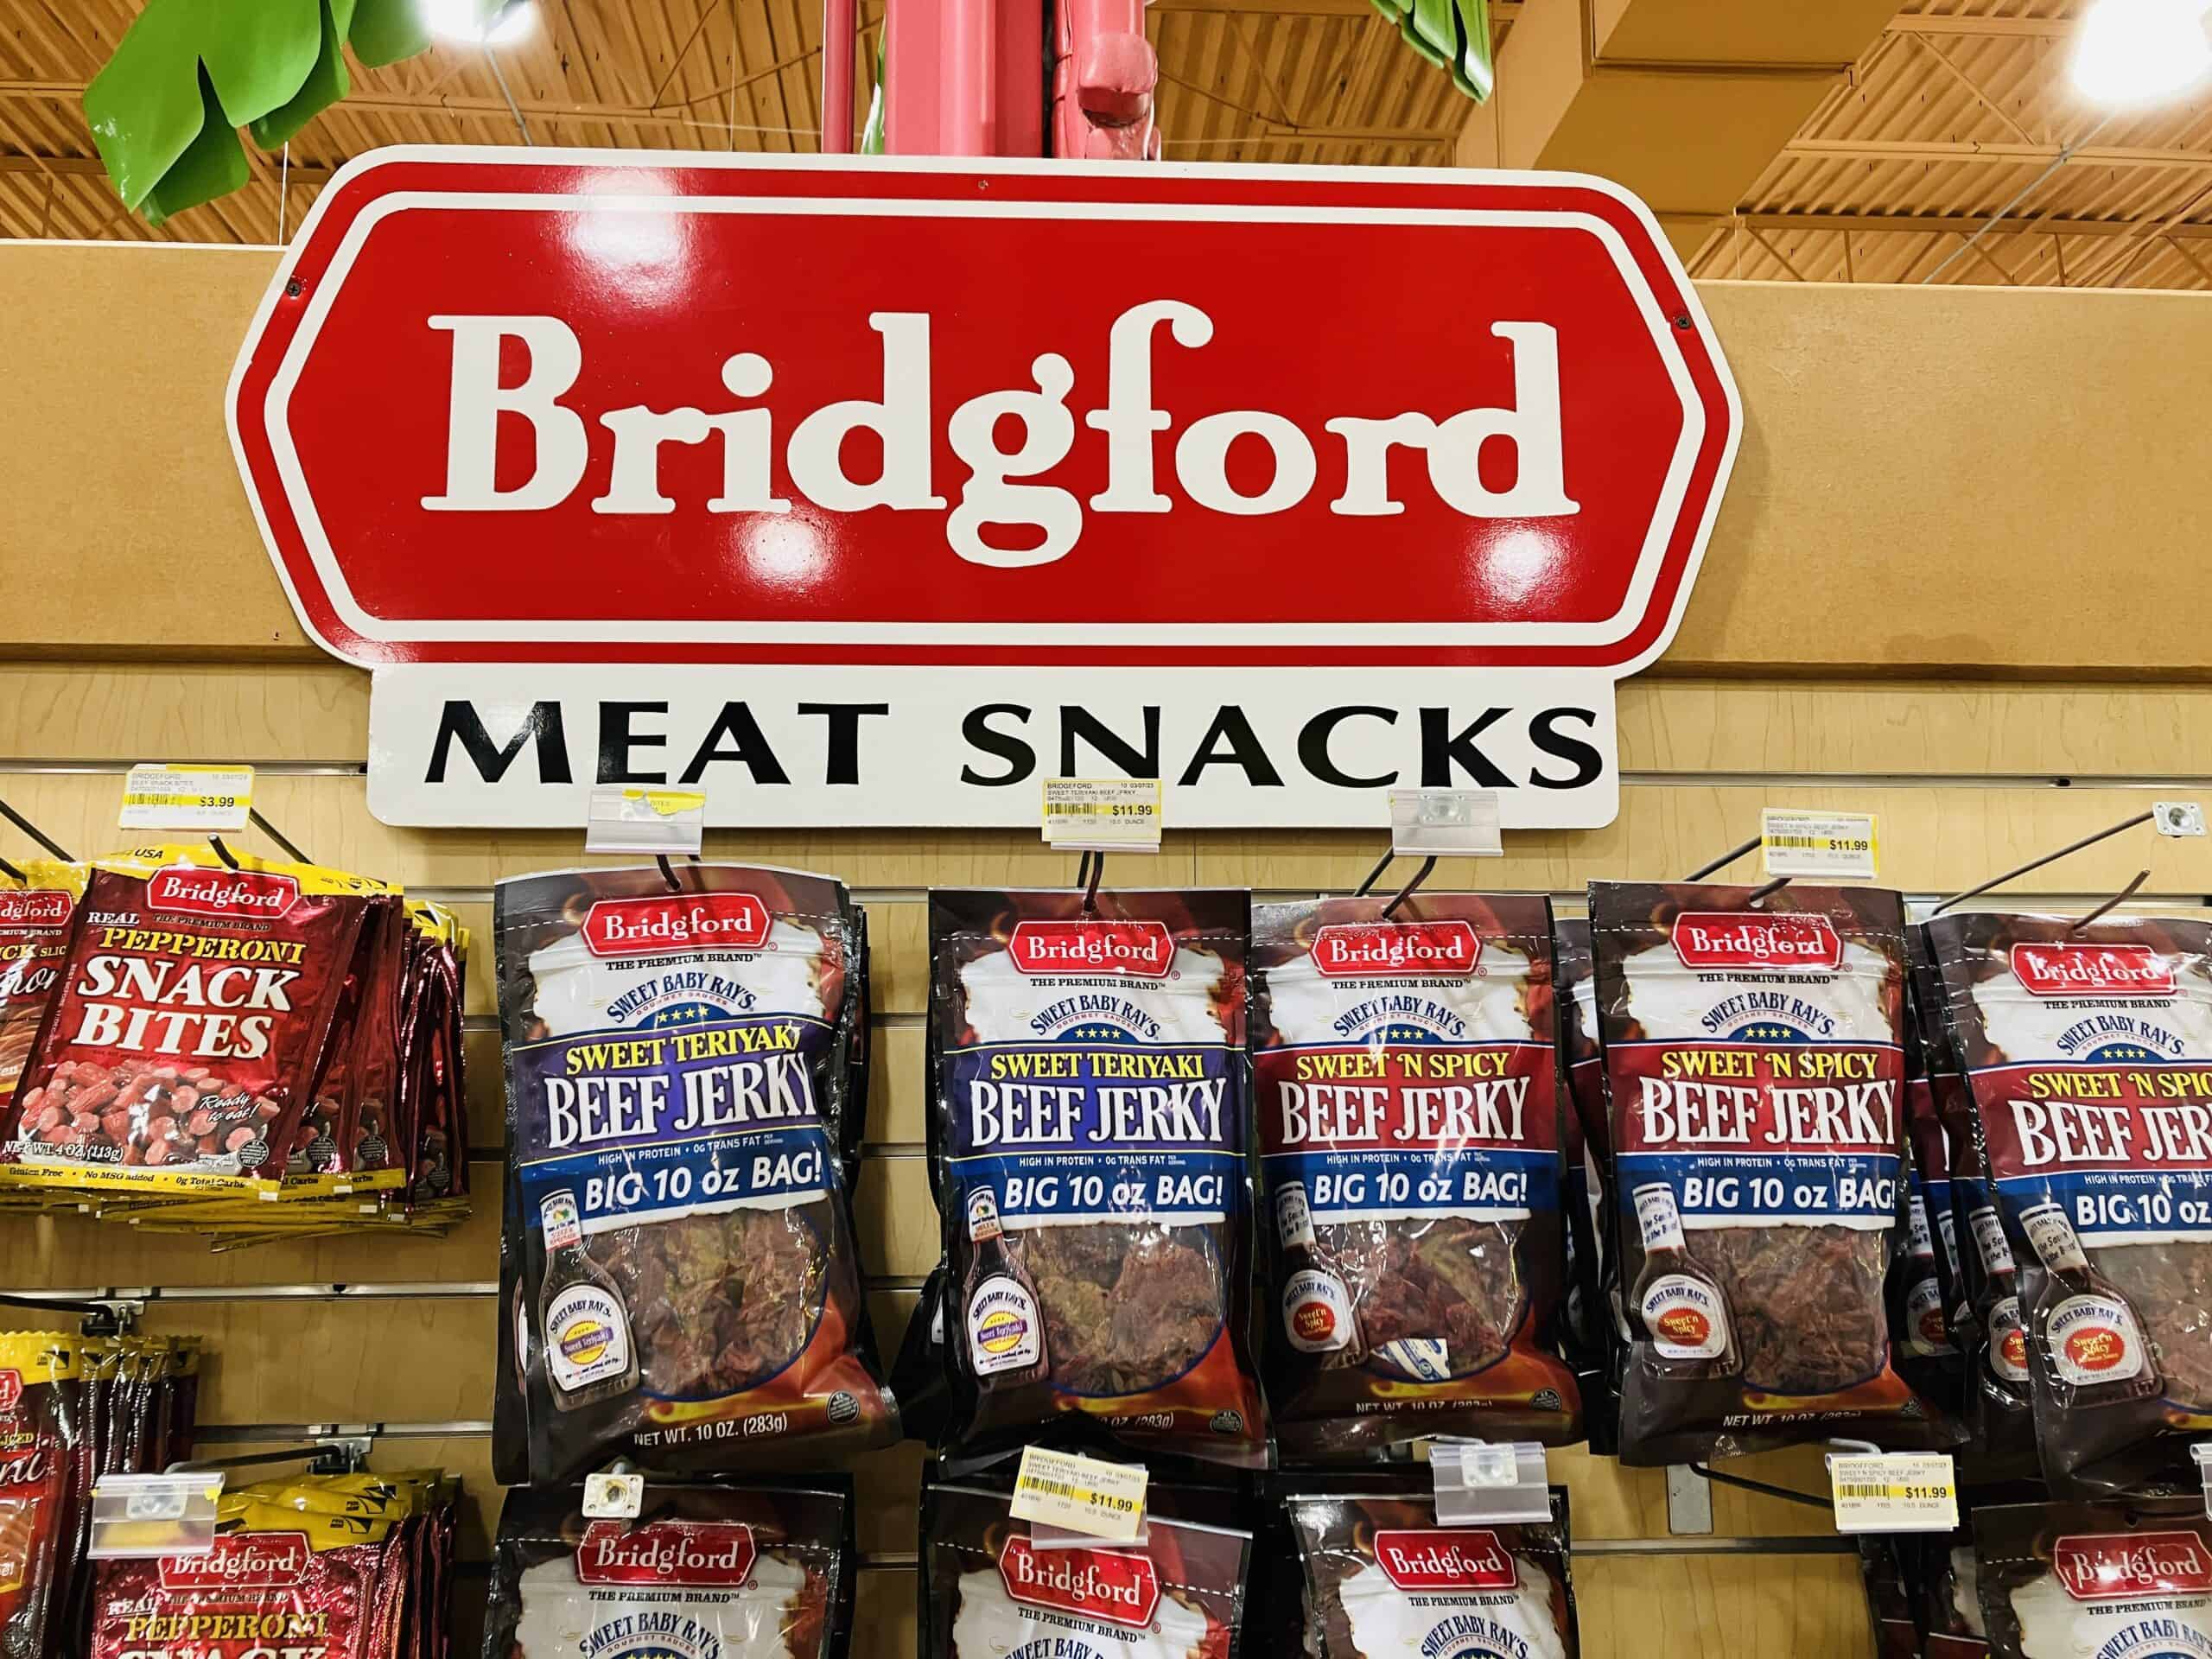 Bridgford meat snacks store display